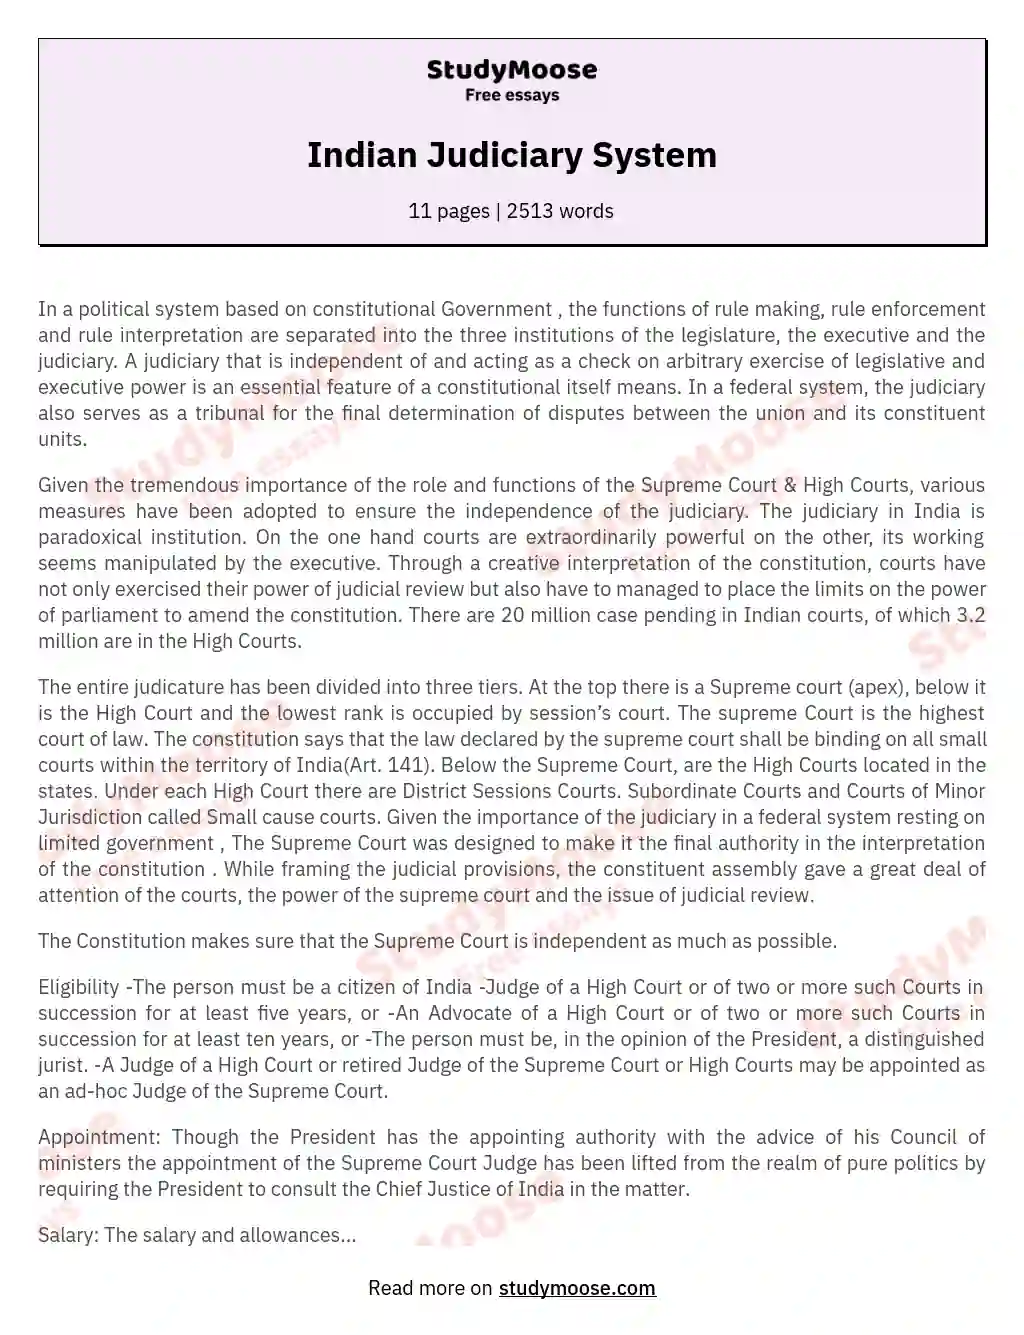 essay book for judiciary exams pdf india